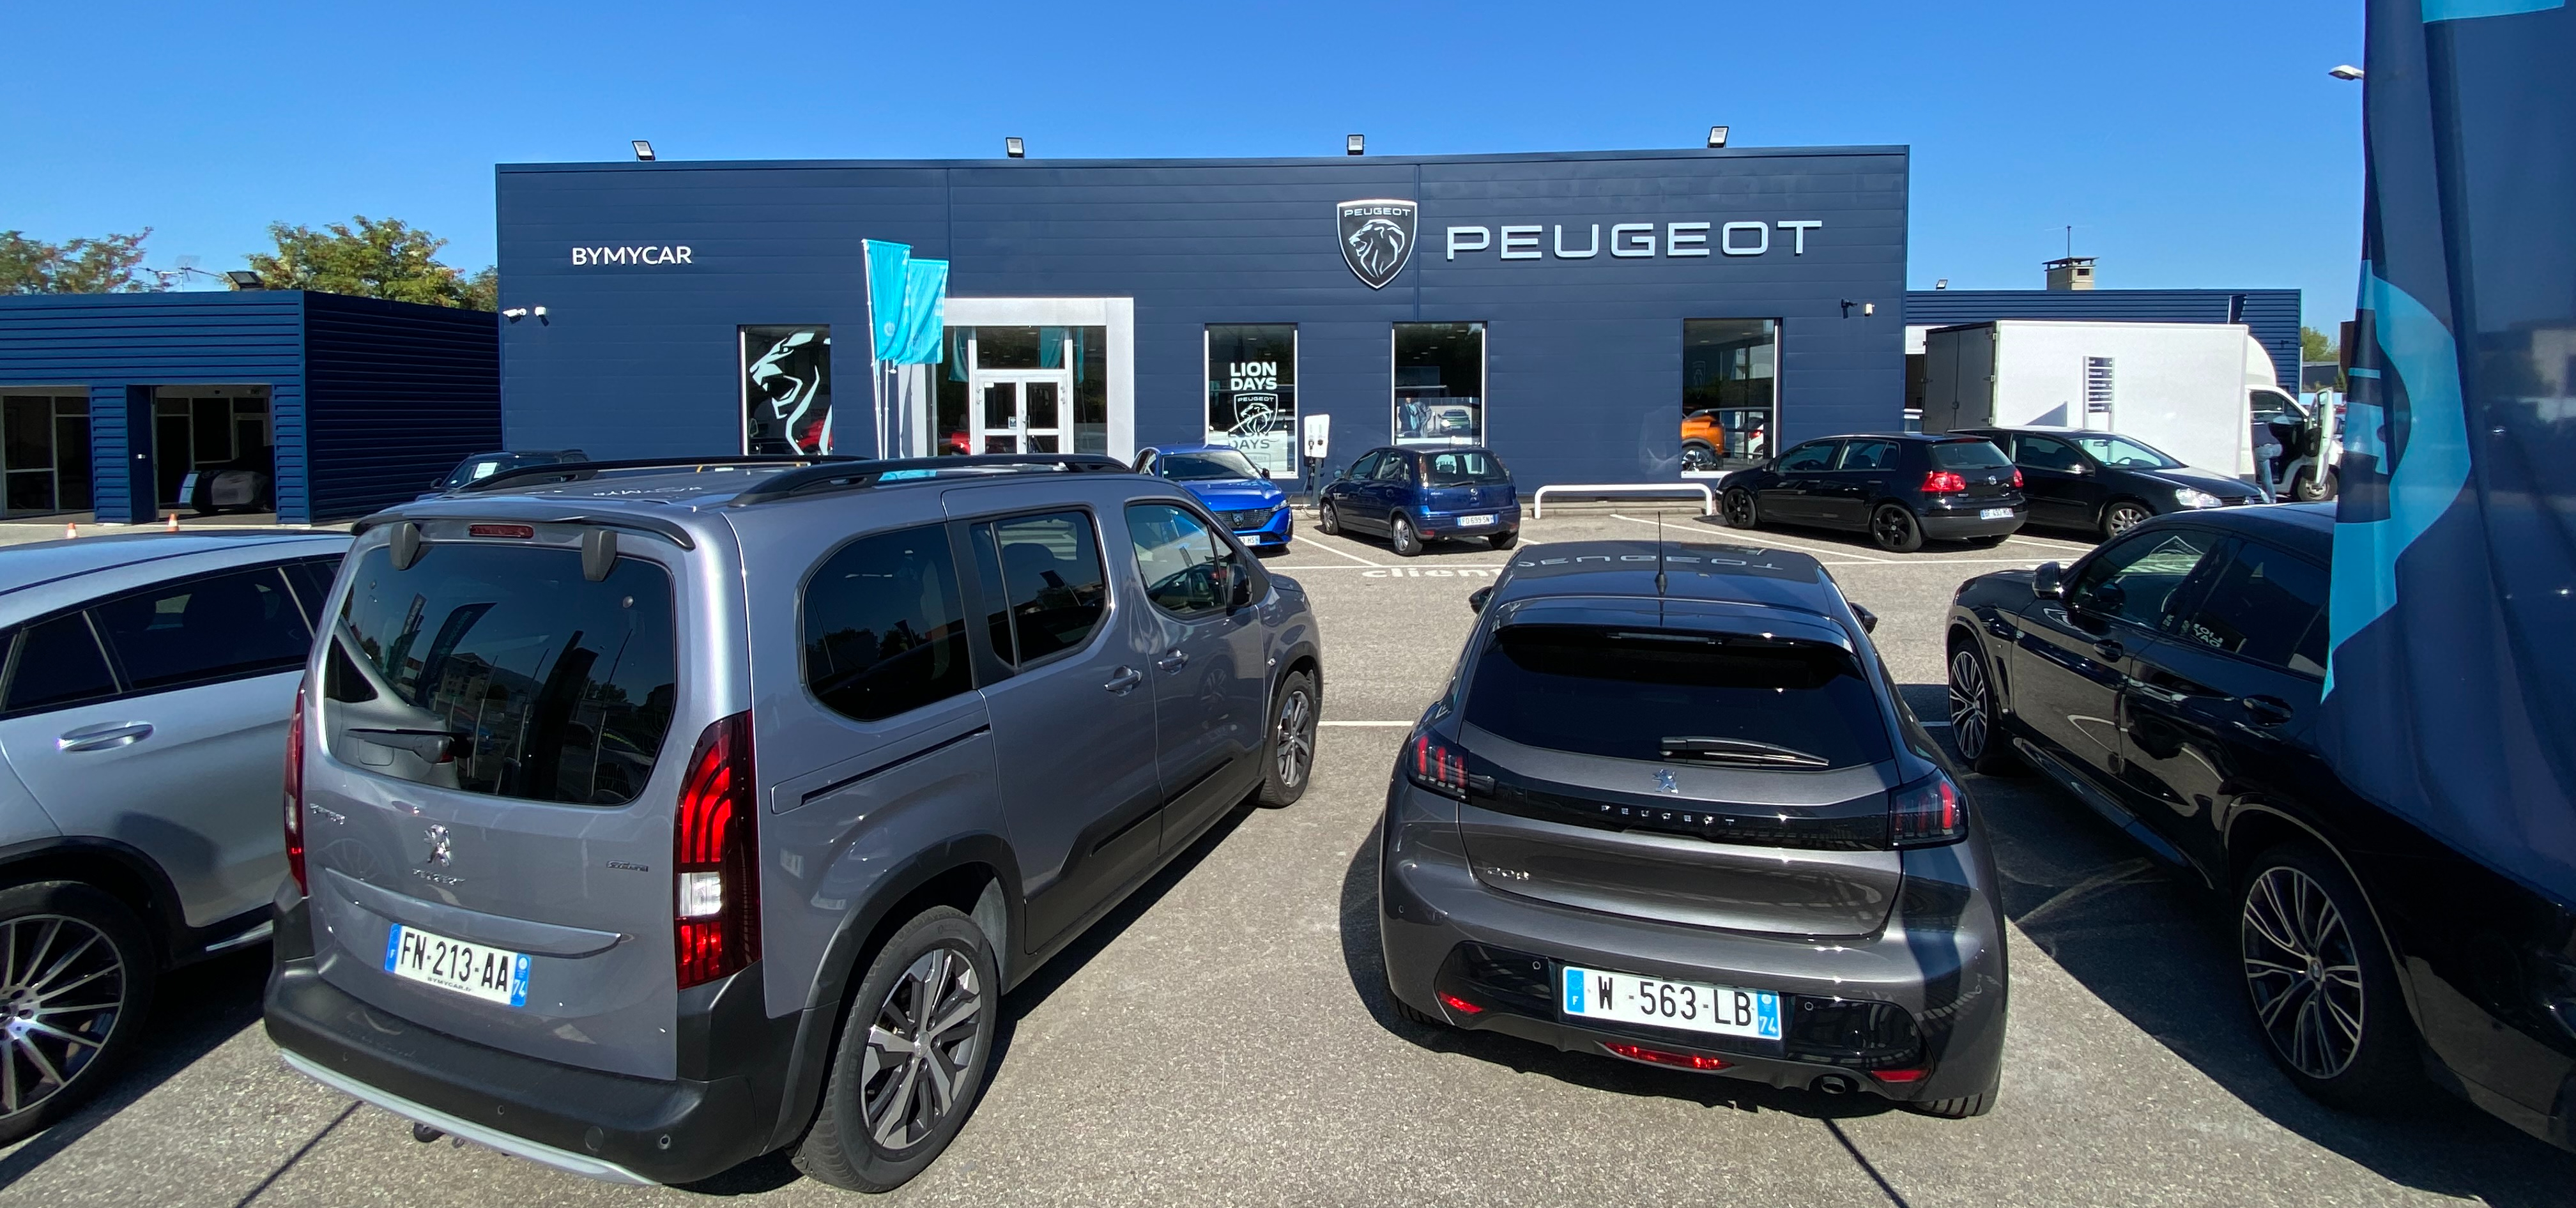 Peugeot - Le crossover Peugeot 2008 propose une gamme d'accessoires à  découvrir :  Faites votre choix et achetez en  ligne depuis : www.accessoires.peugeot.fr